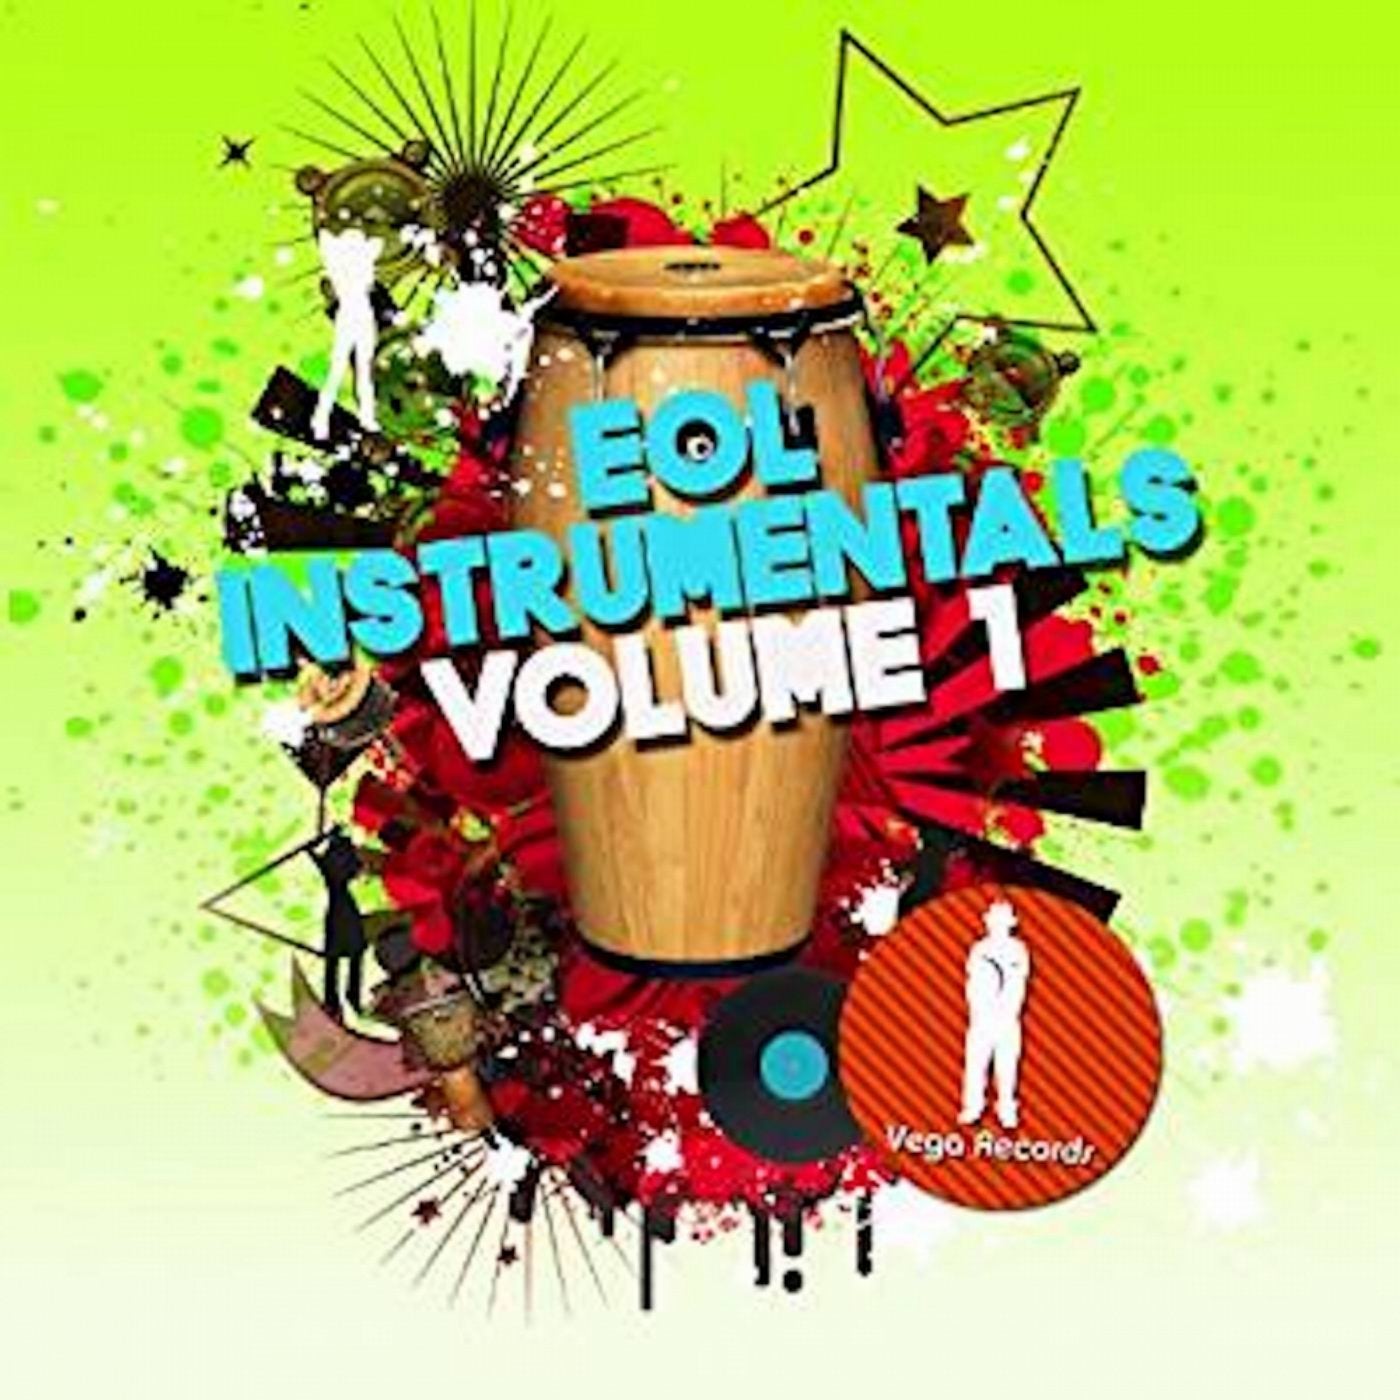 EOL Instrumentals Volume I